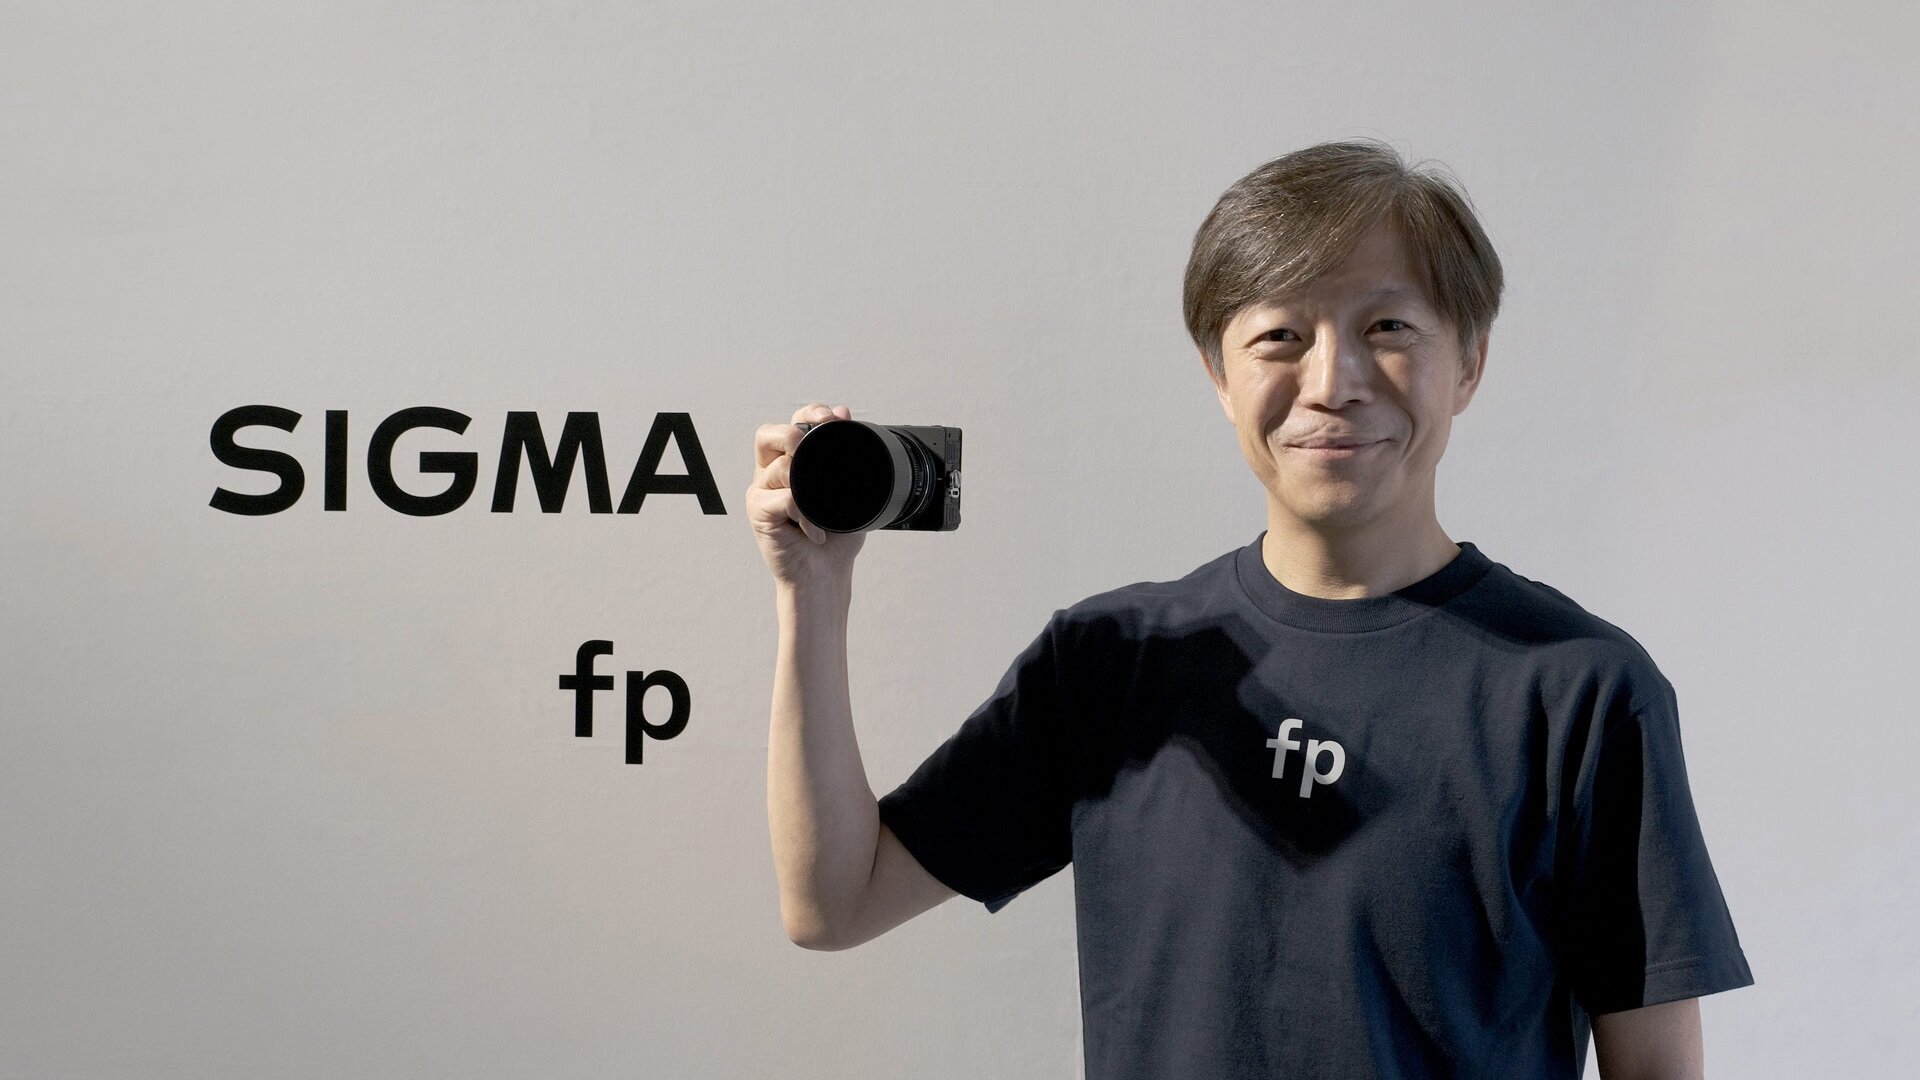 Η Sigma ανακοίνωσε την μικρότερη full-frame mirrorless camera, την Sigma fp